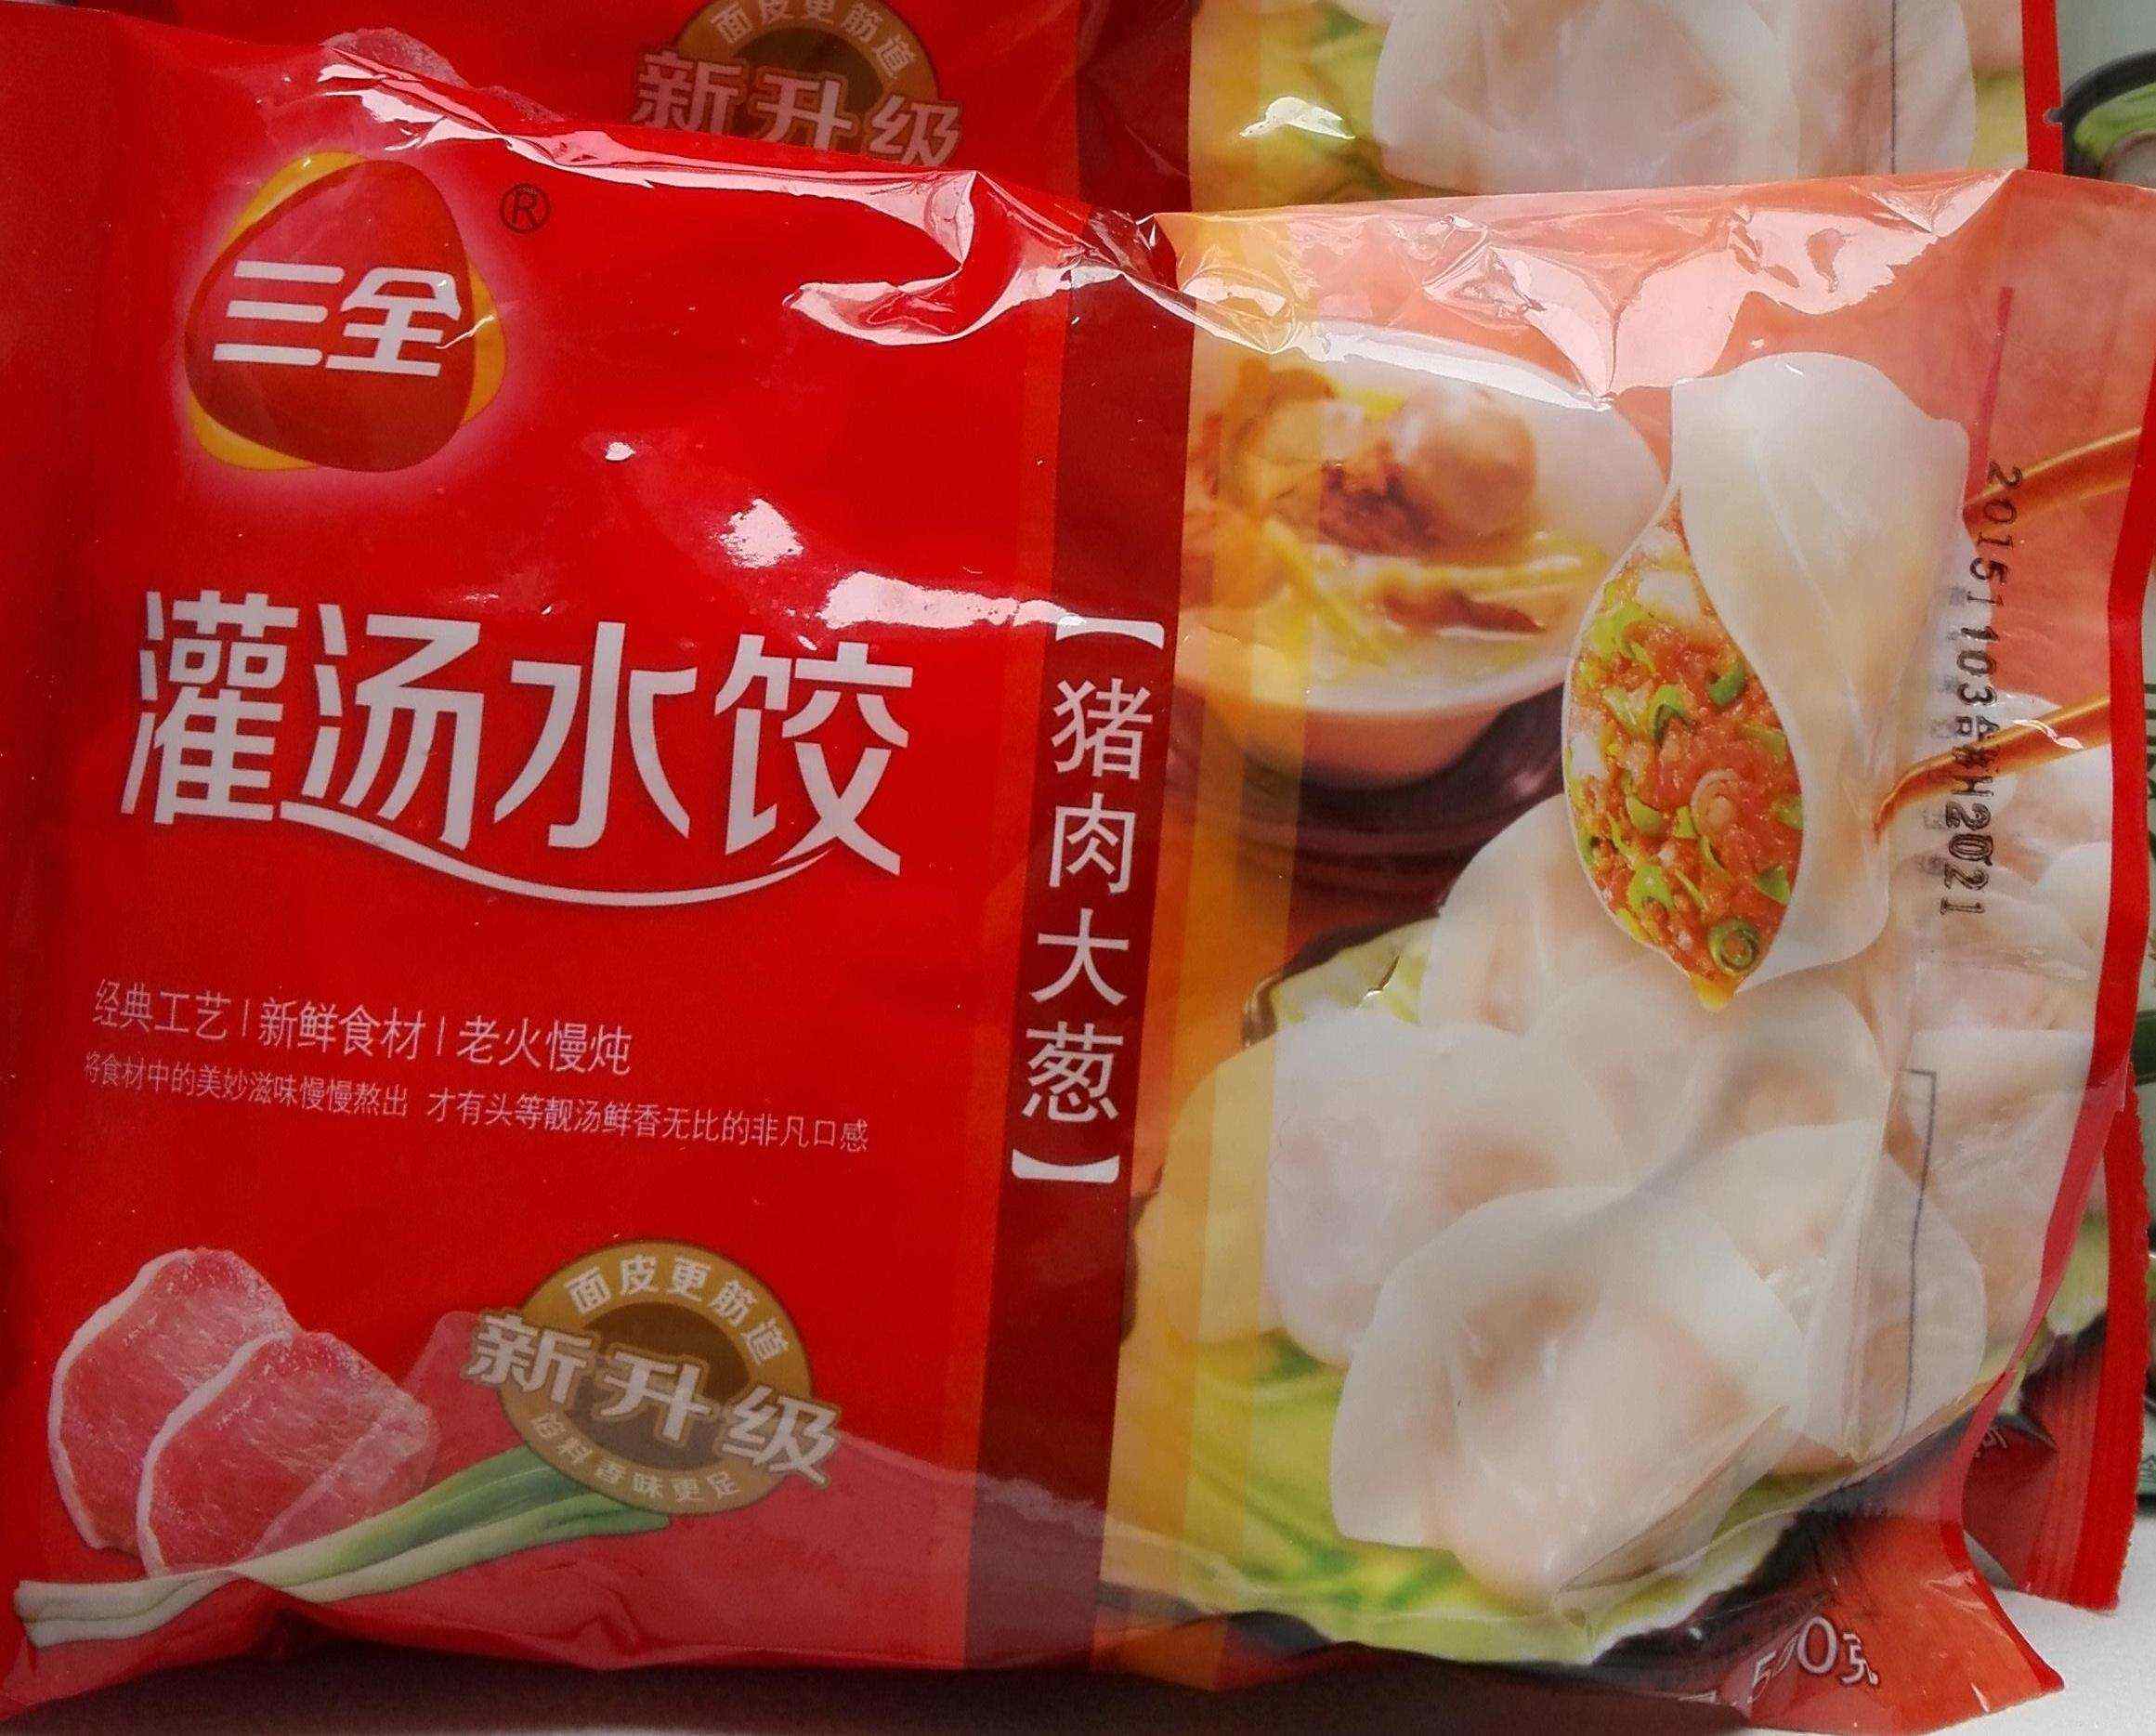 水饺品牌“湾仔码头”推出2款口味的新猪肉素水饺